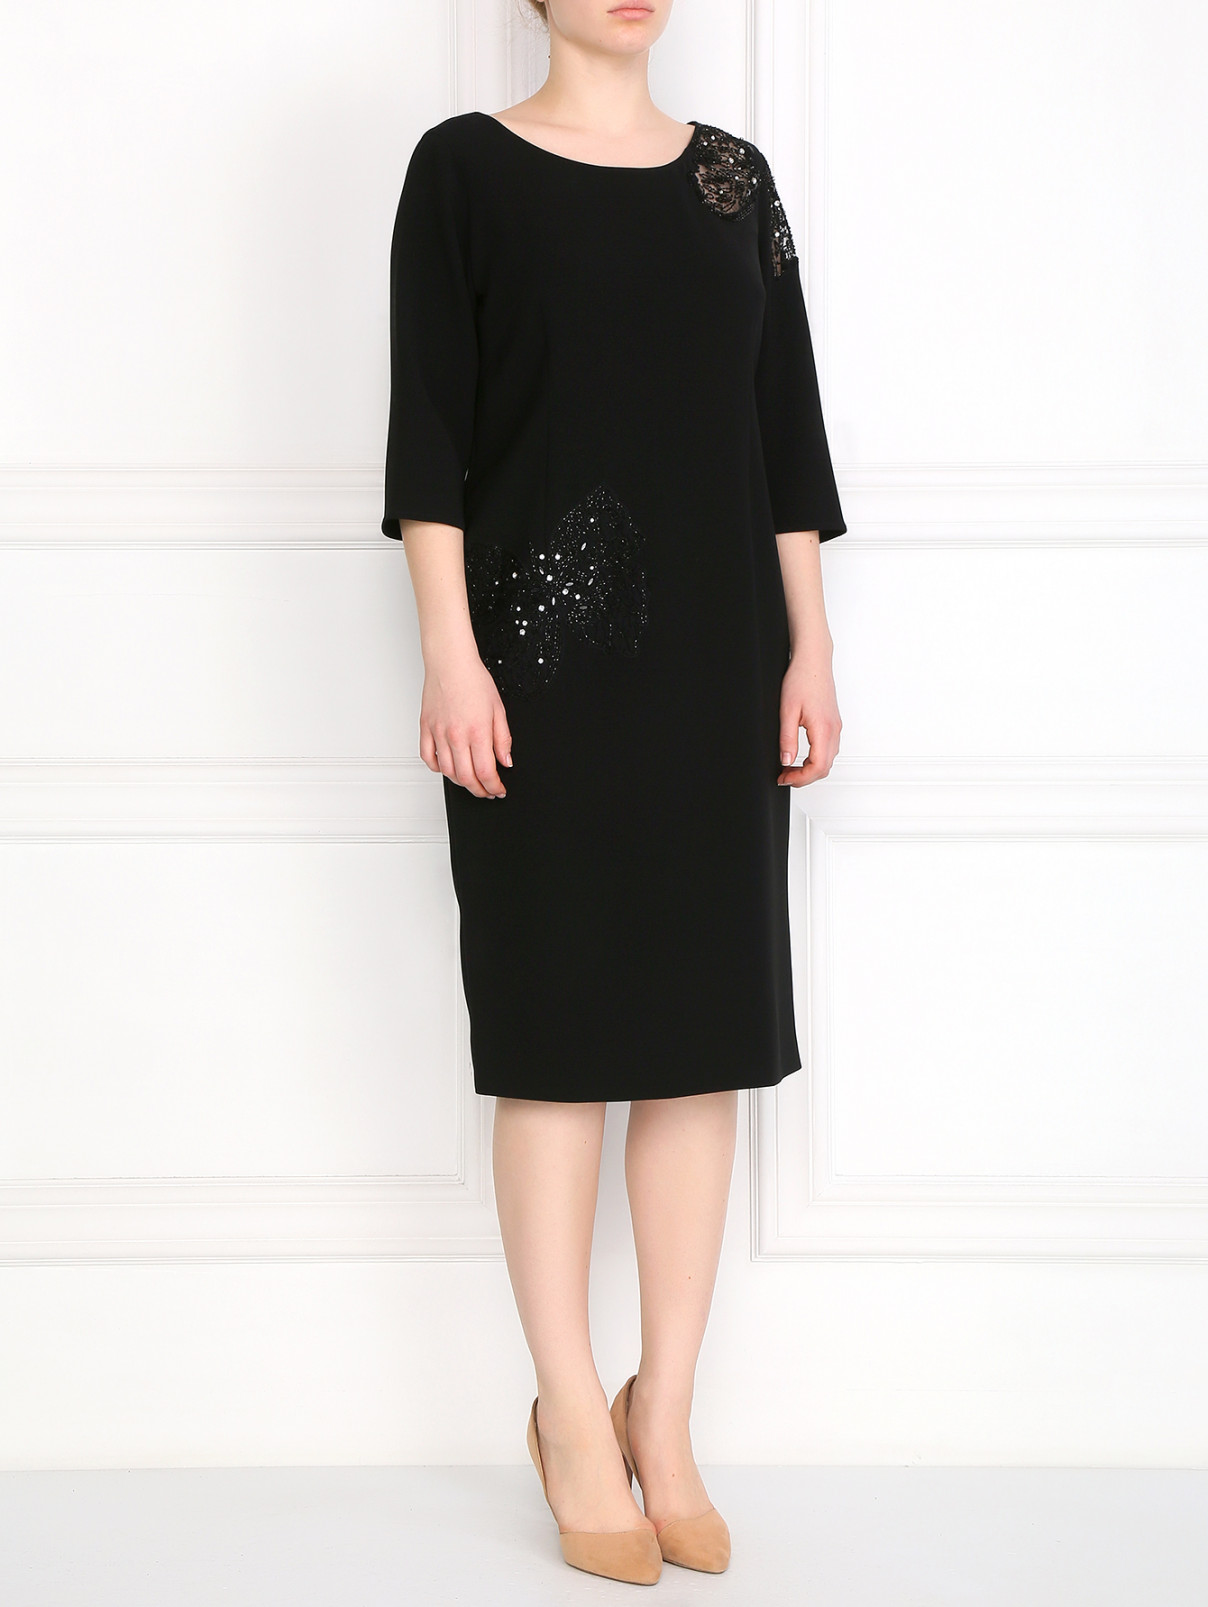 Платье декорированное бисером Marina Rinaldi  –  Модель Общий вид  – Цвет:  Черный